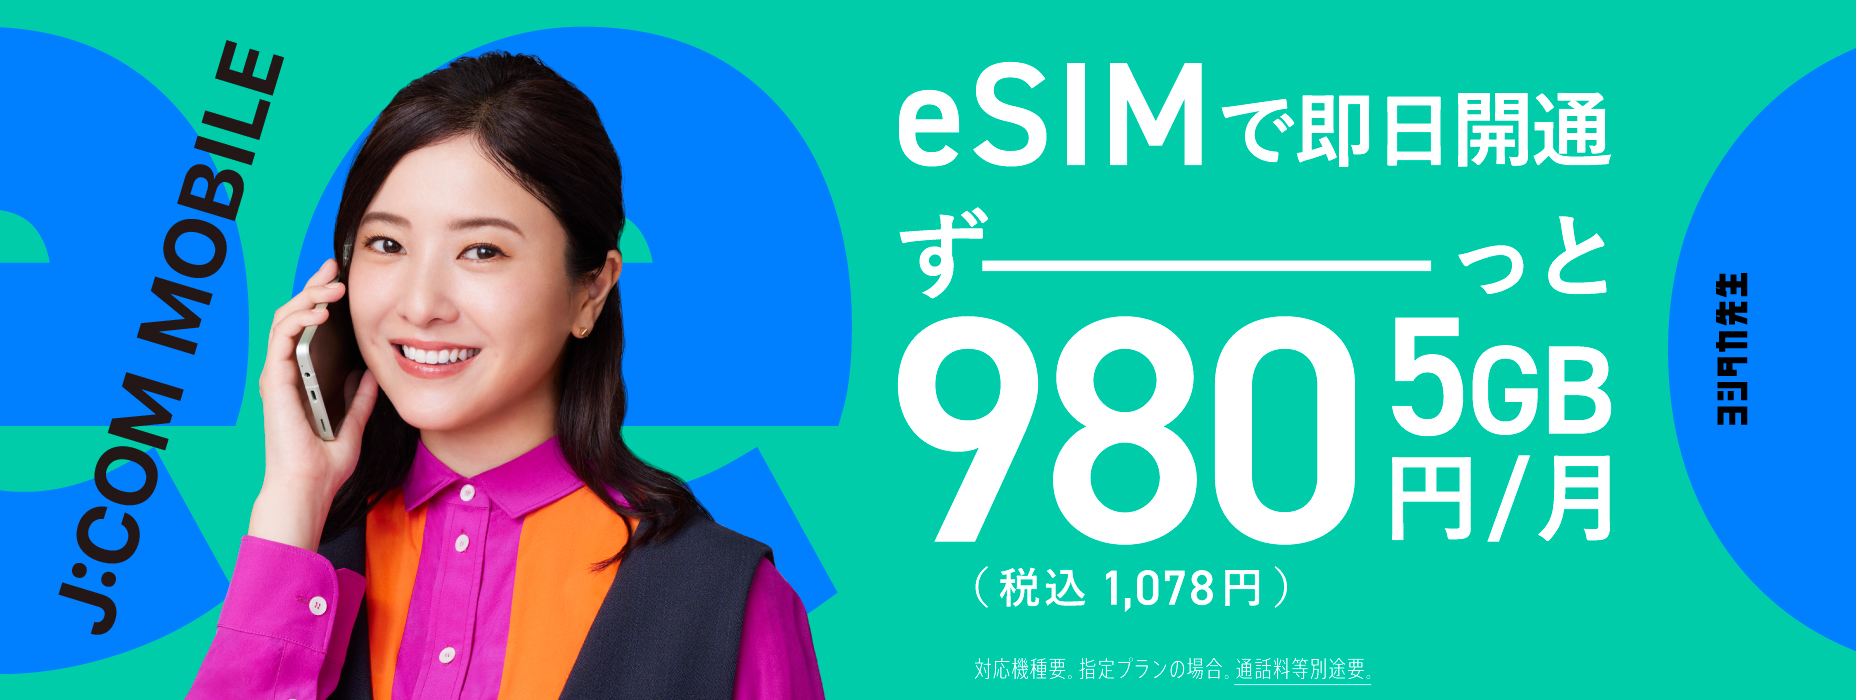 eSIM mới! 5GB hết cỡ 980 yên (1.078 yên bao gồm thuế) khi áp dụng dữ liệu